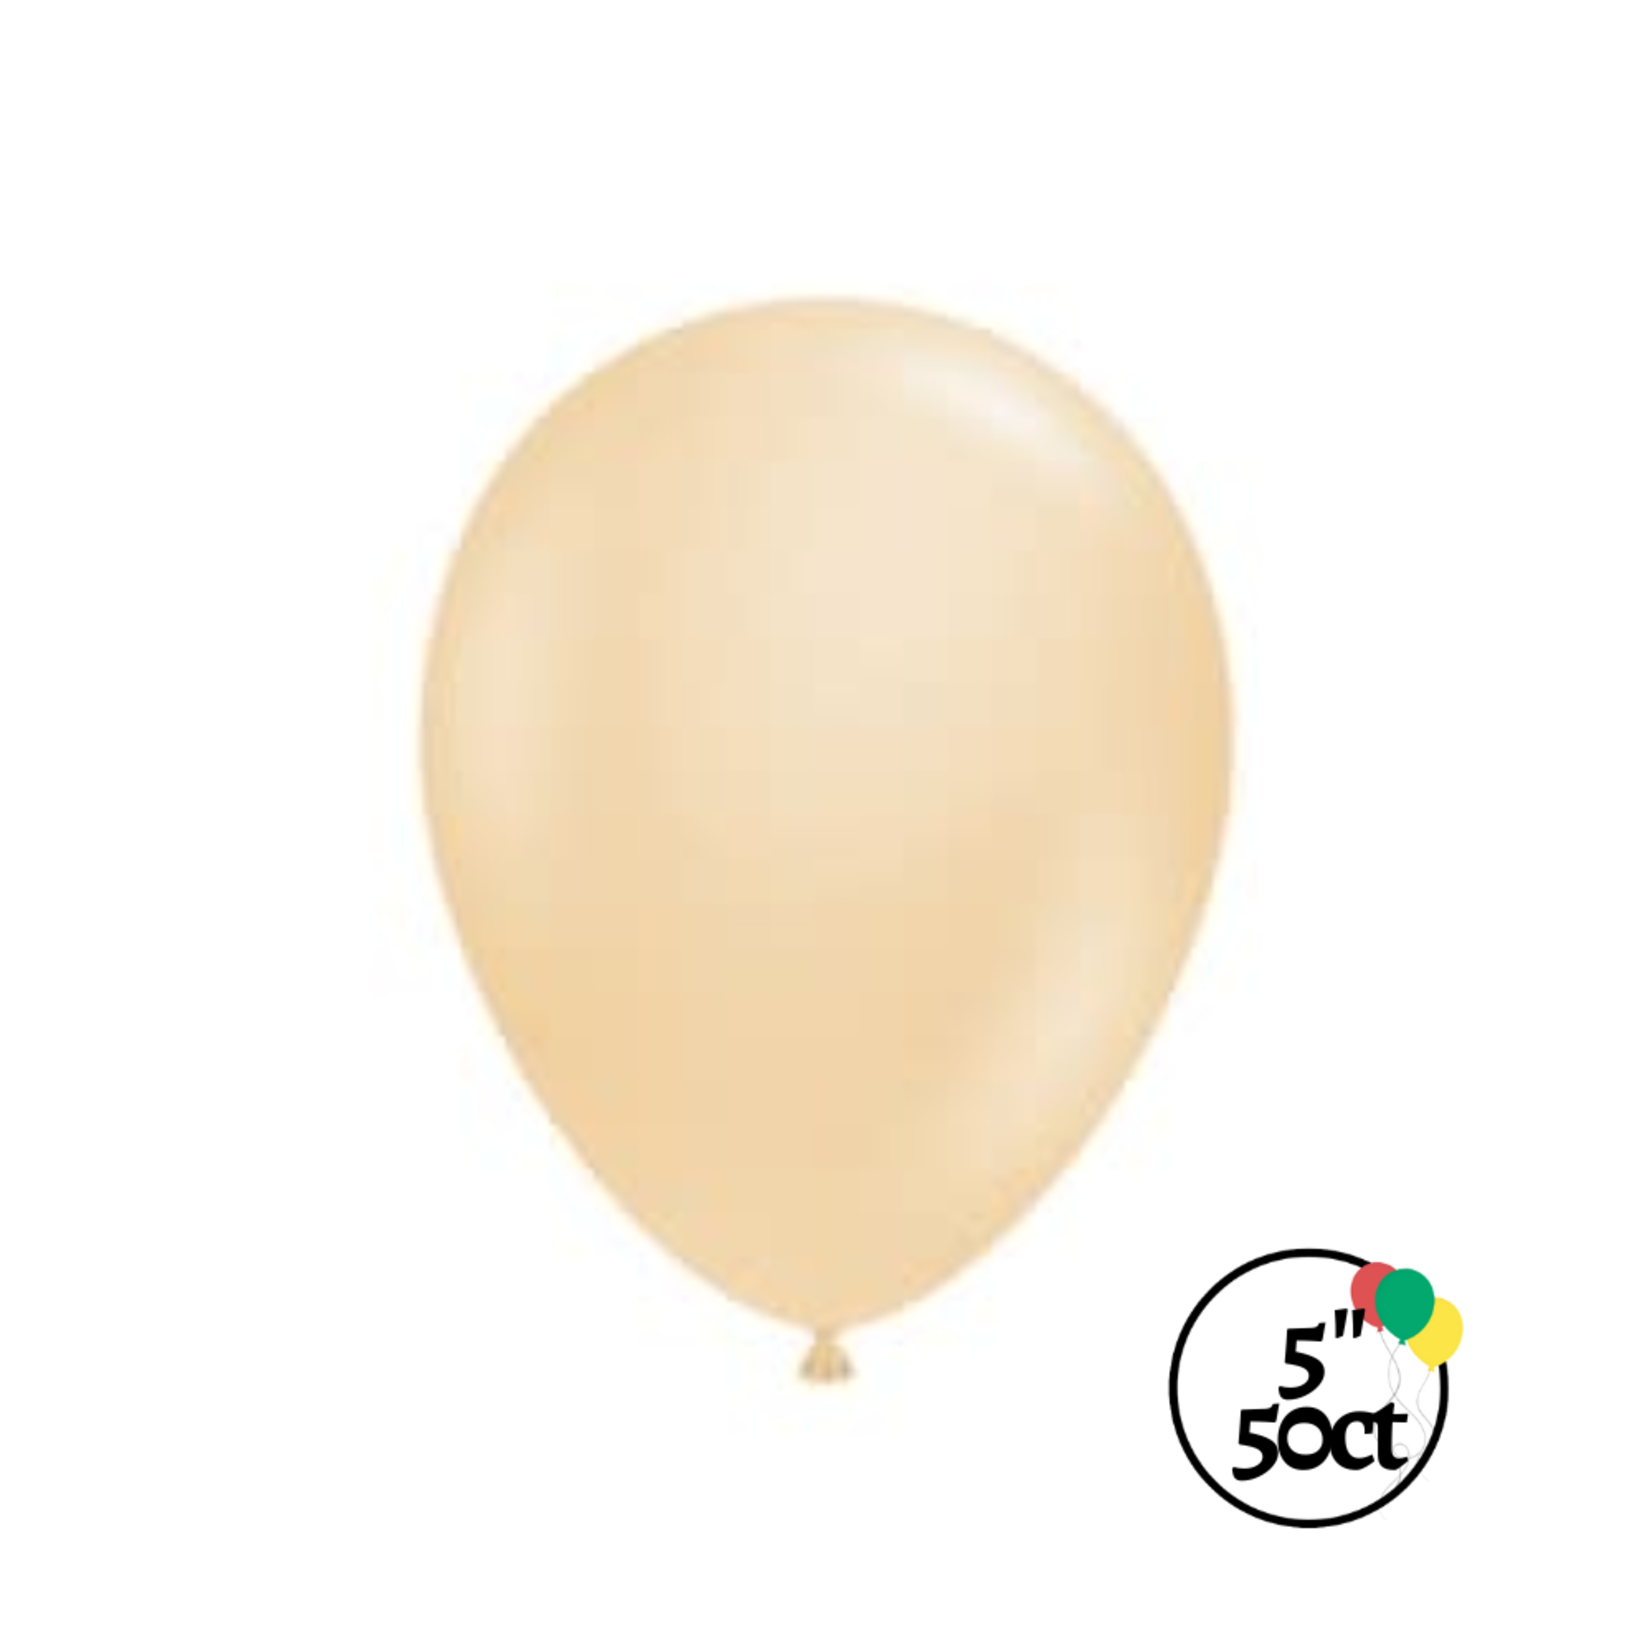 Tuftex 5" Tuftex Blush 50ct Balloon